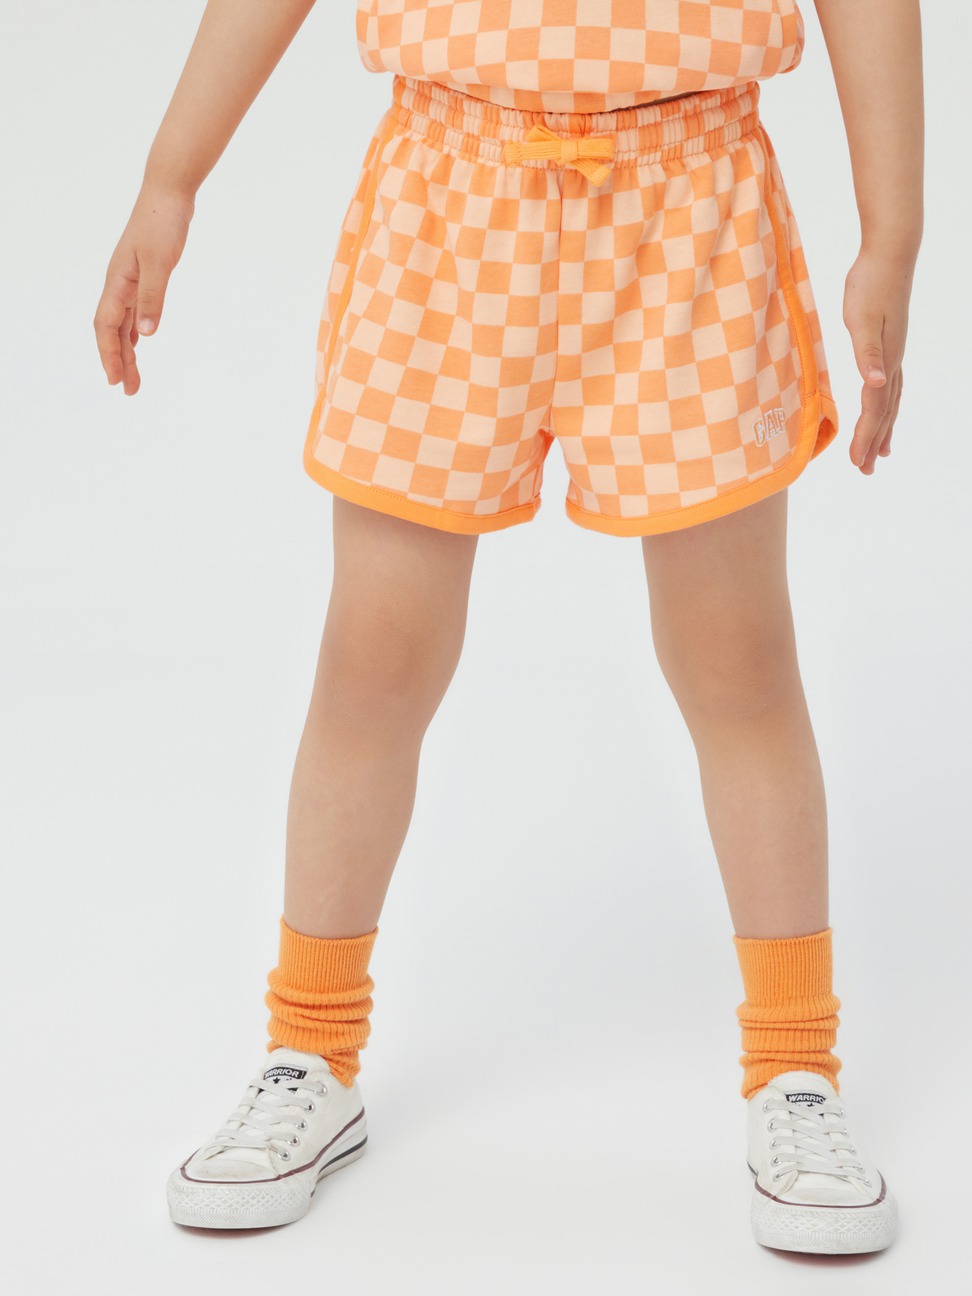 女童|Logo薄款寬鬆棋盤格休閒短褲-橙色棋盤格